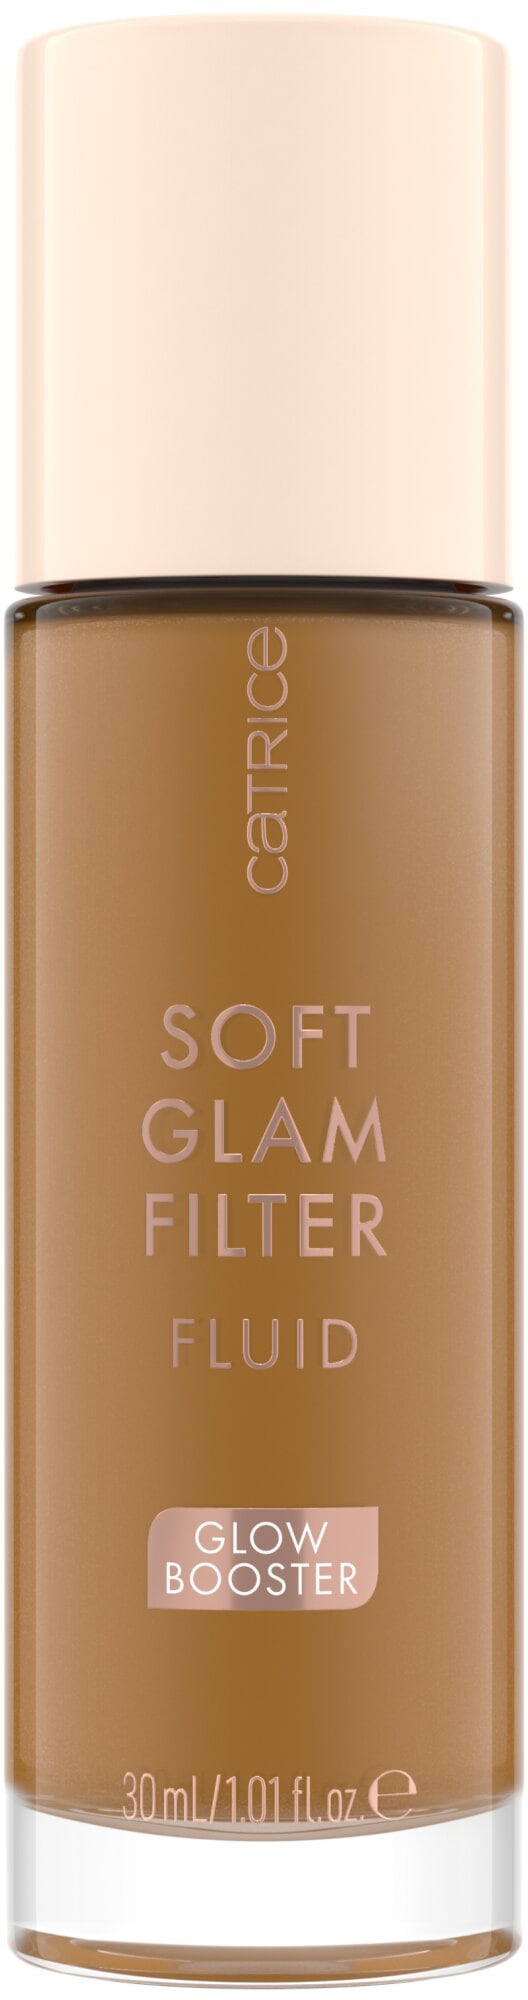 BAUR Filter Fluid«, Glam Primer »Soft Catrice (Set) |